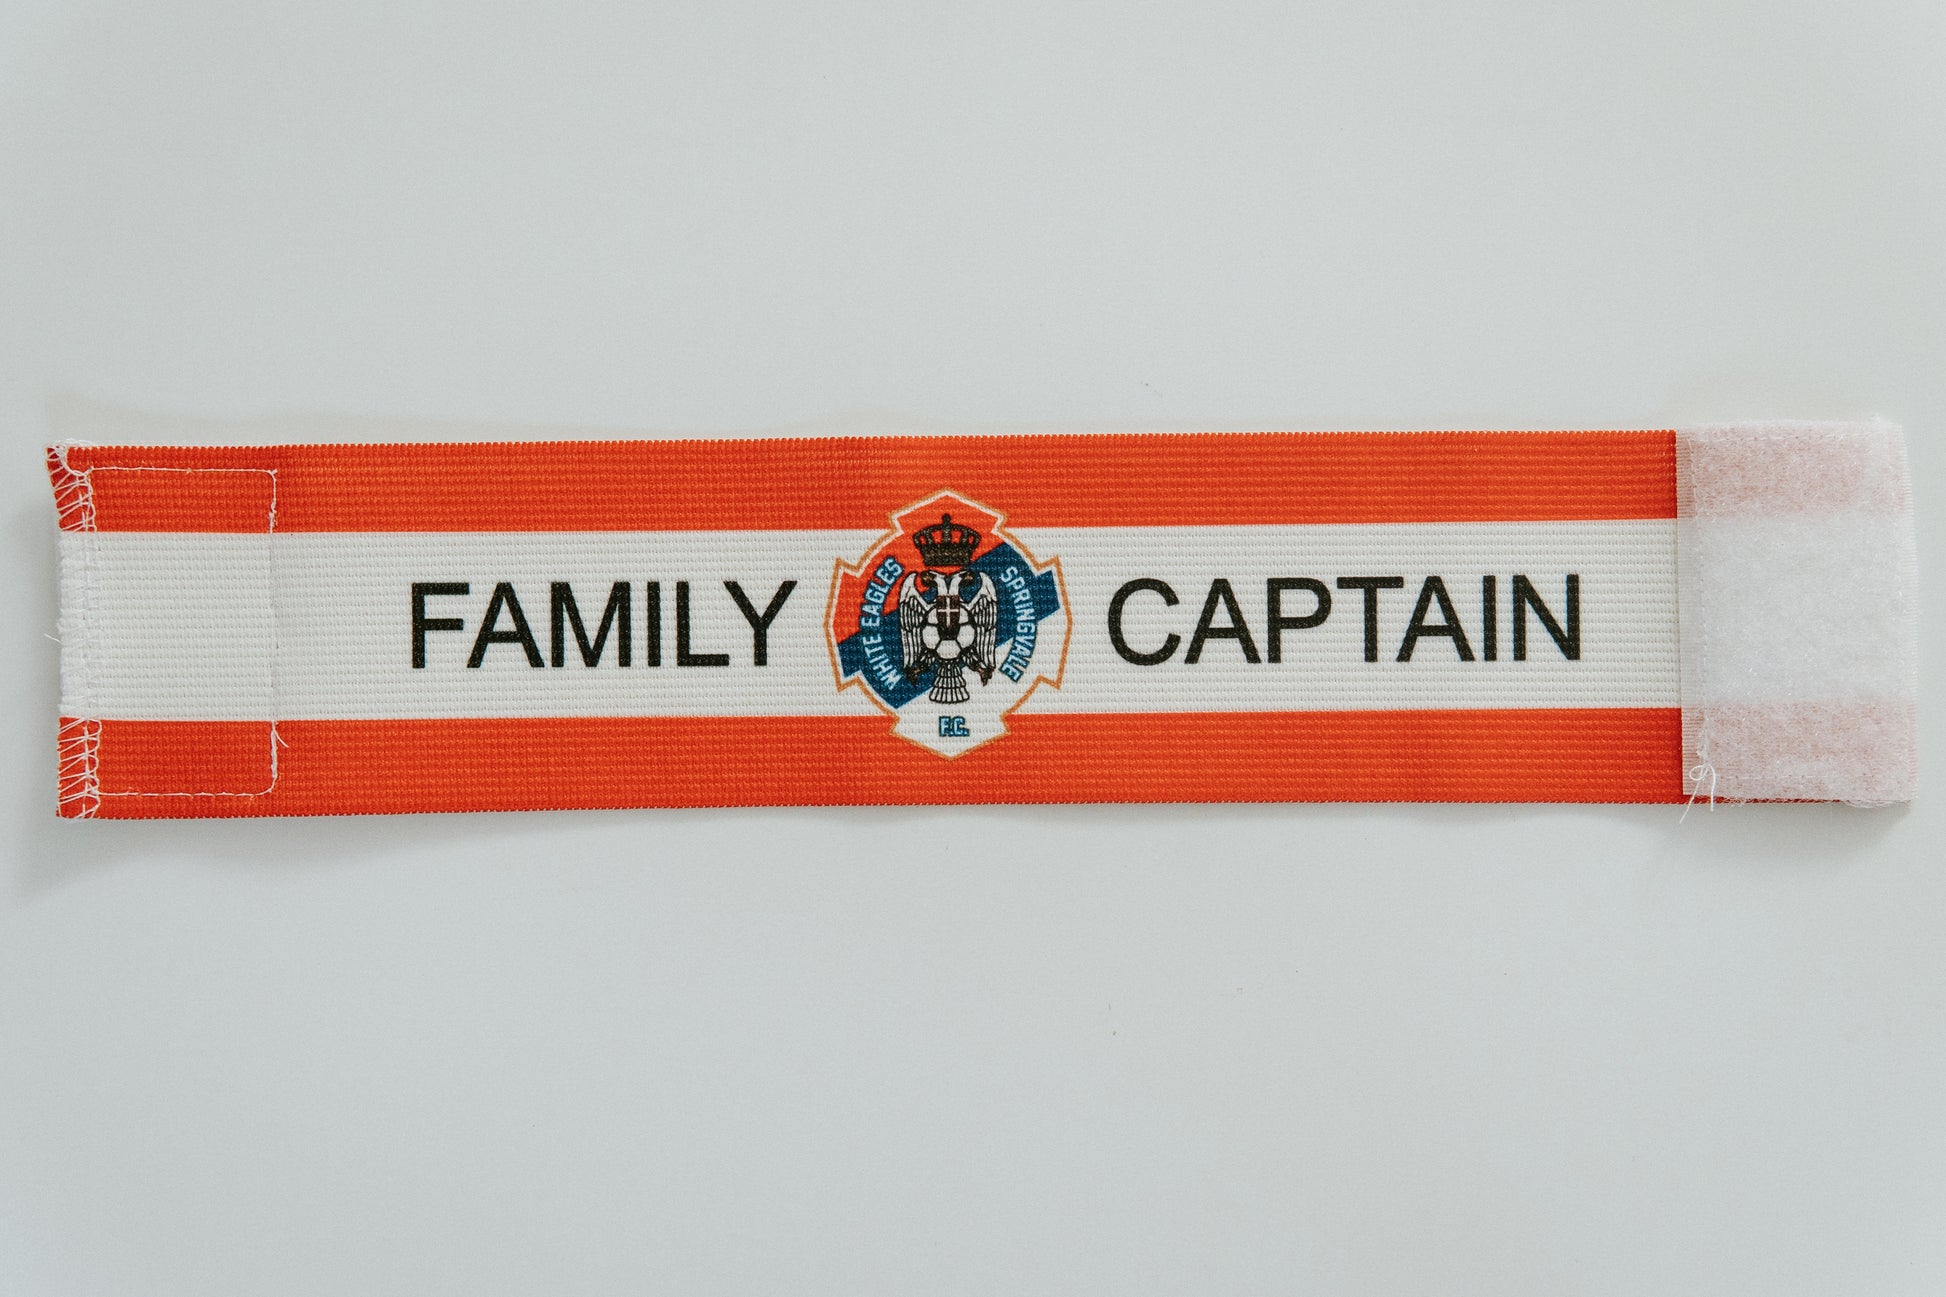 Custom made captains armband. Soccer captains armband designed for NPL Soccer Club.